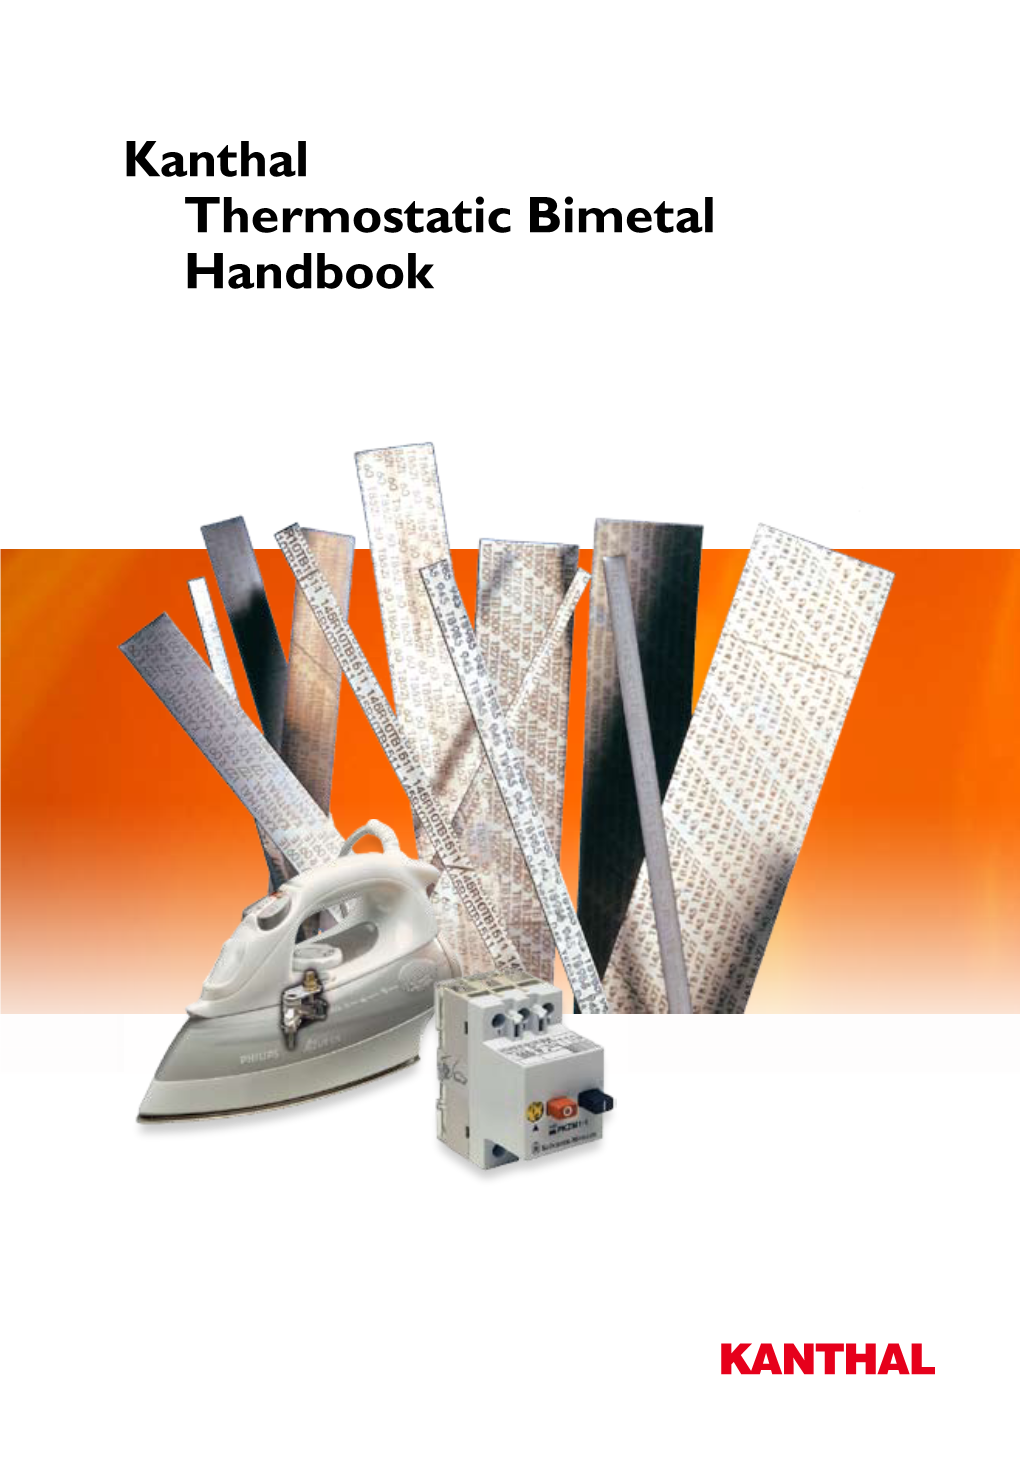 Kanthal Thermostatic Bimetal Handbook